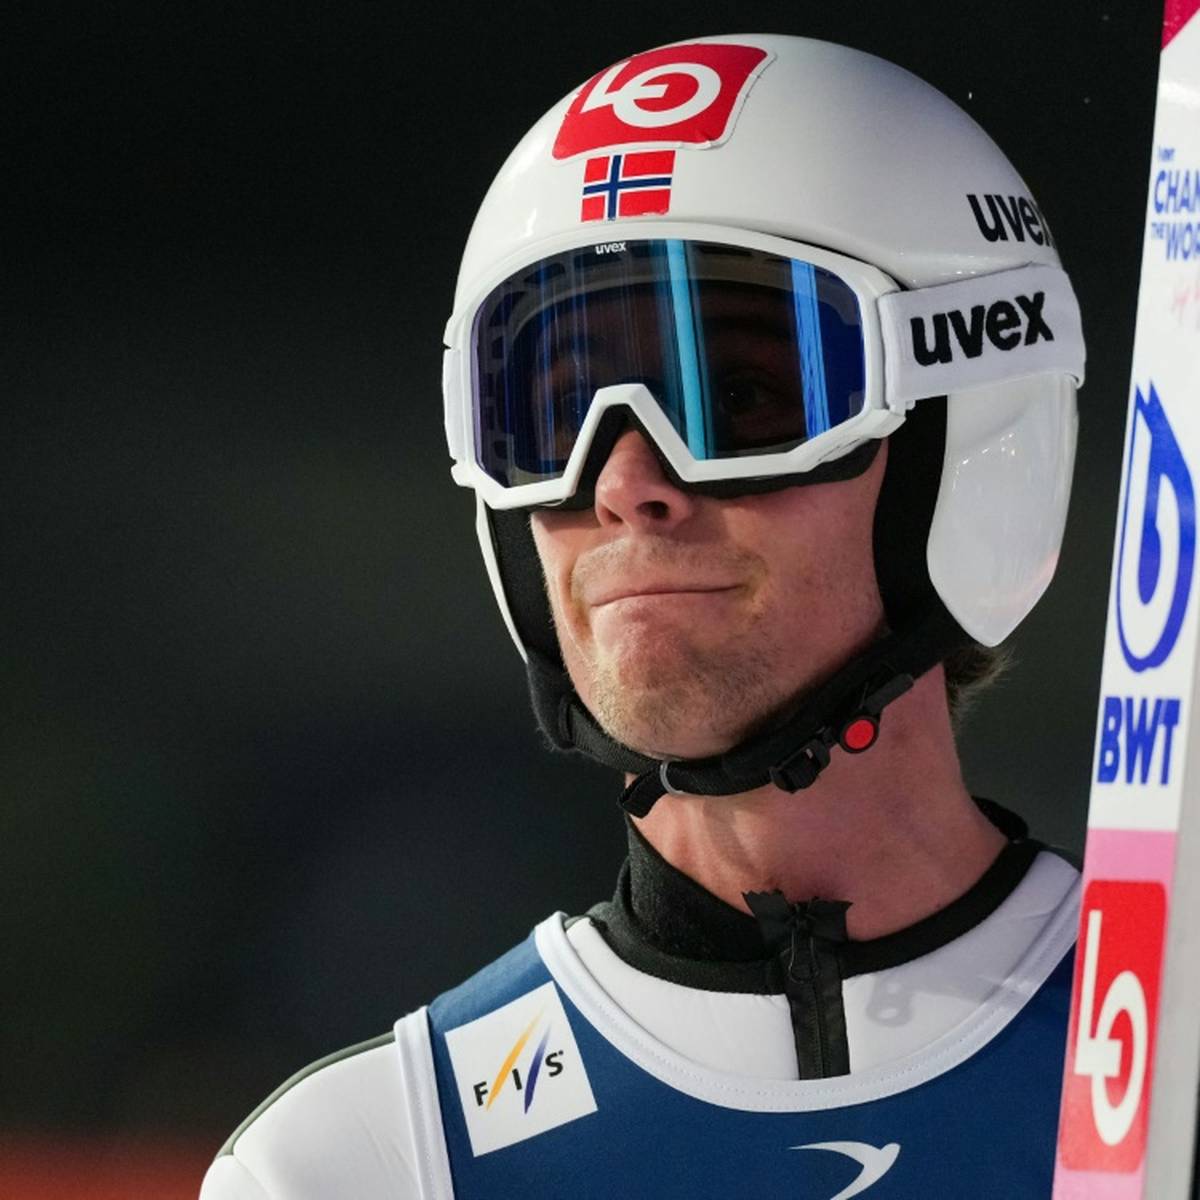 Zwei Wochen vor Beginn der Olympischen Winterspiele in Peking wachsen die Corona-Sorgen im Lager der norwegischen Skispringer.